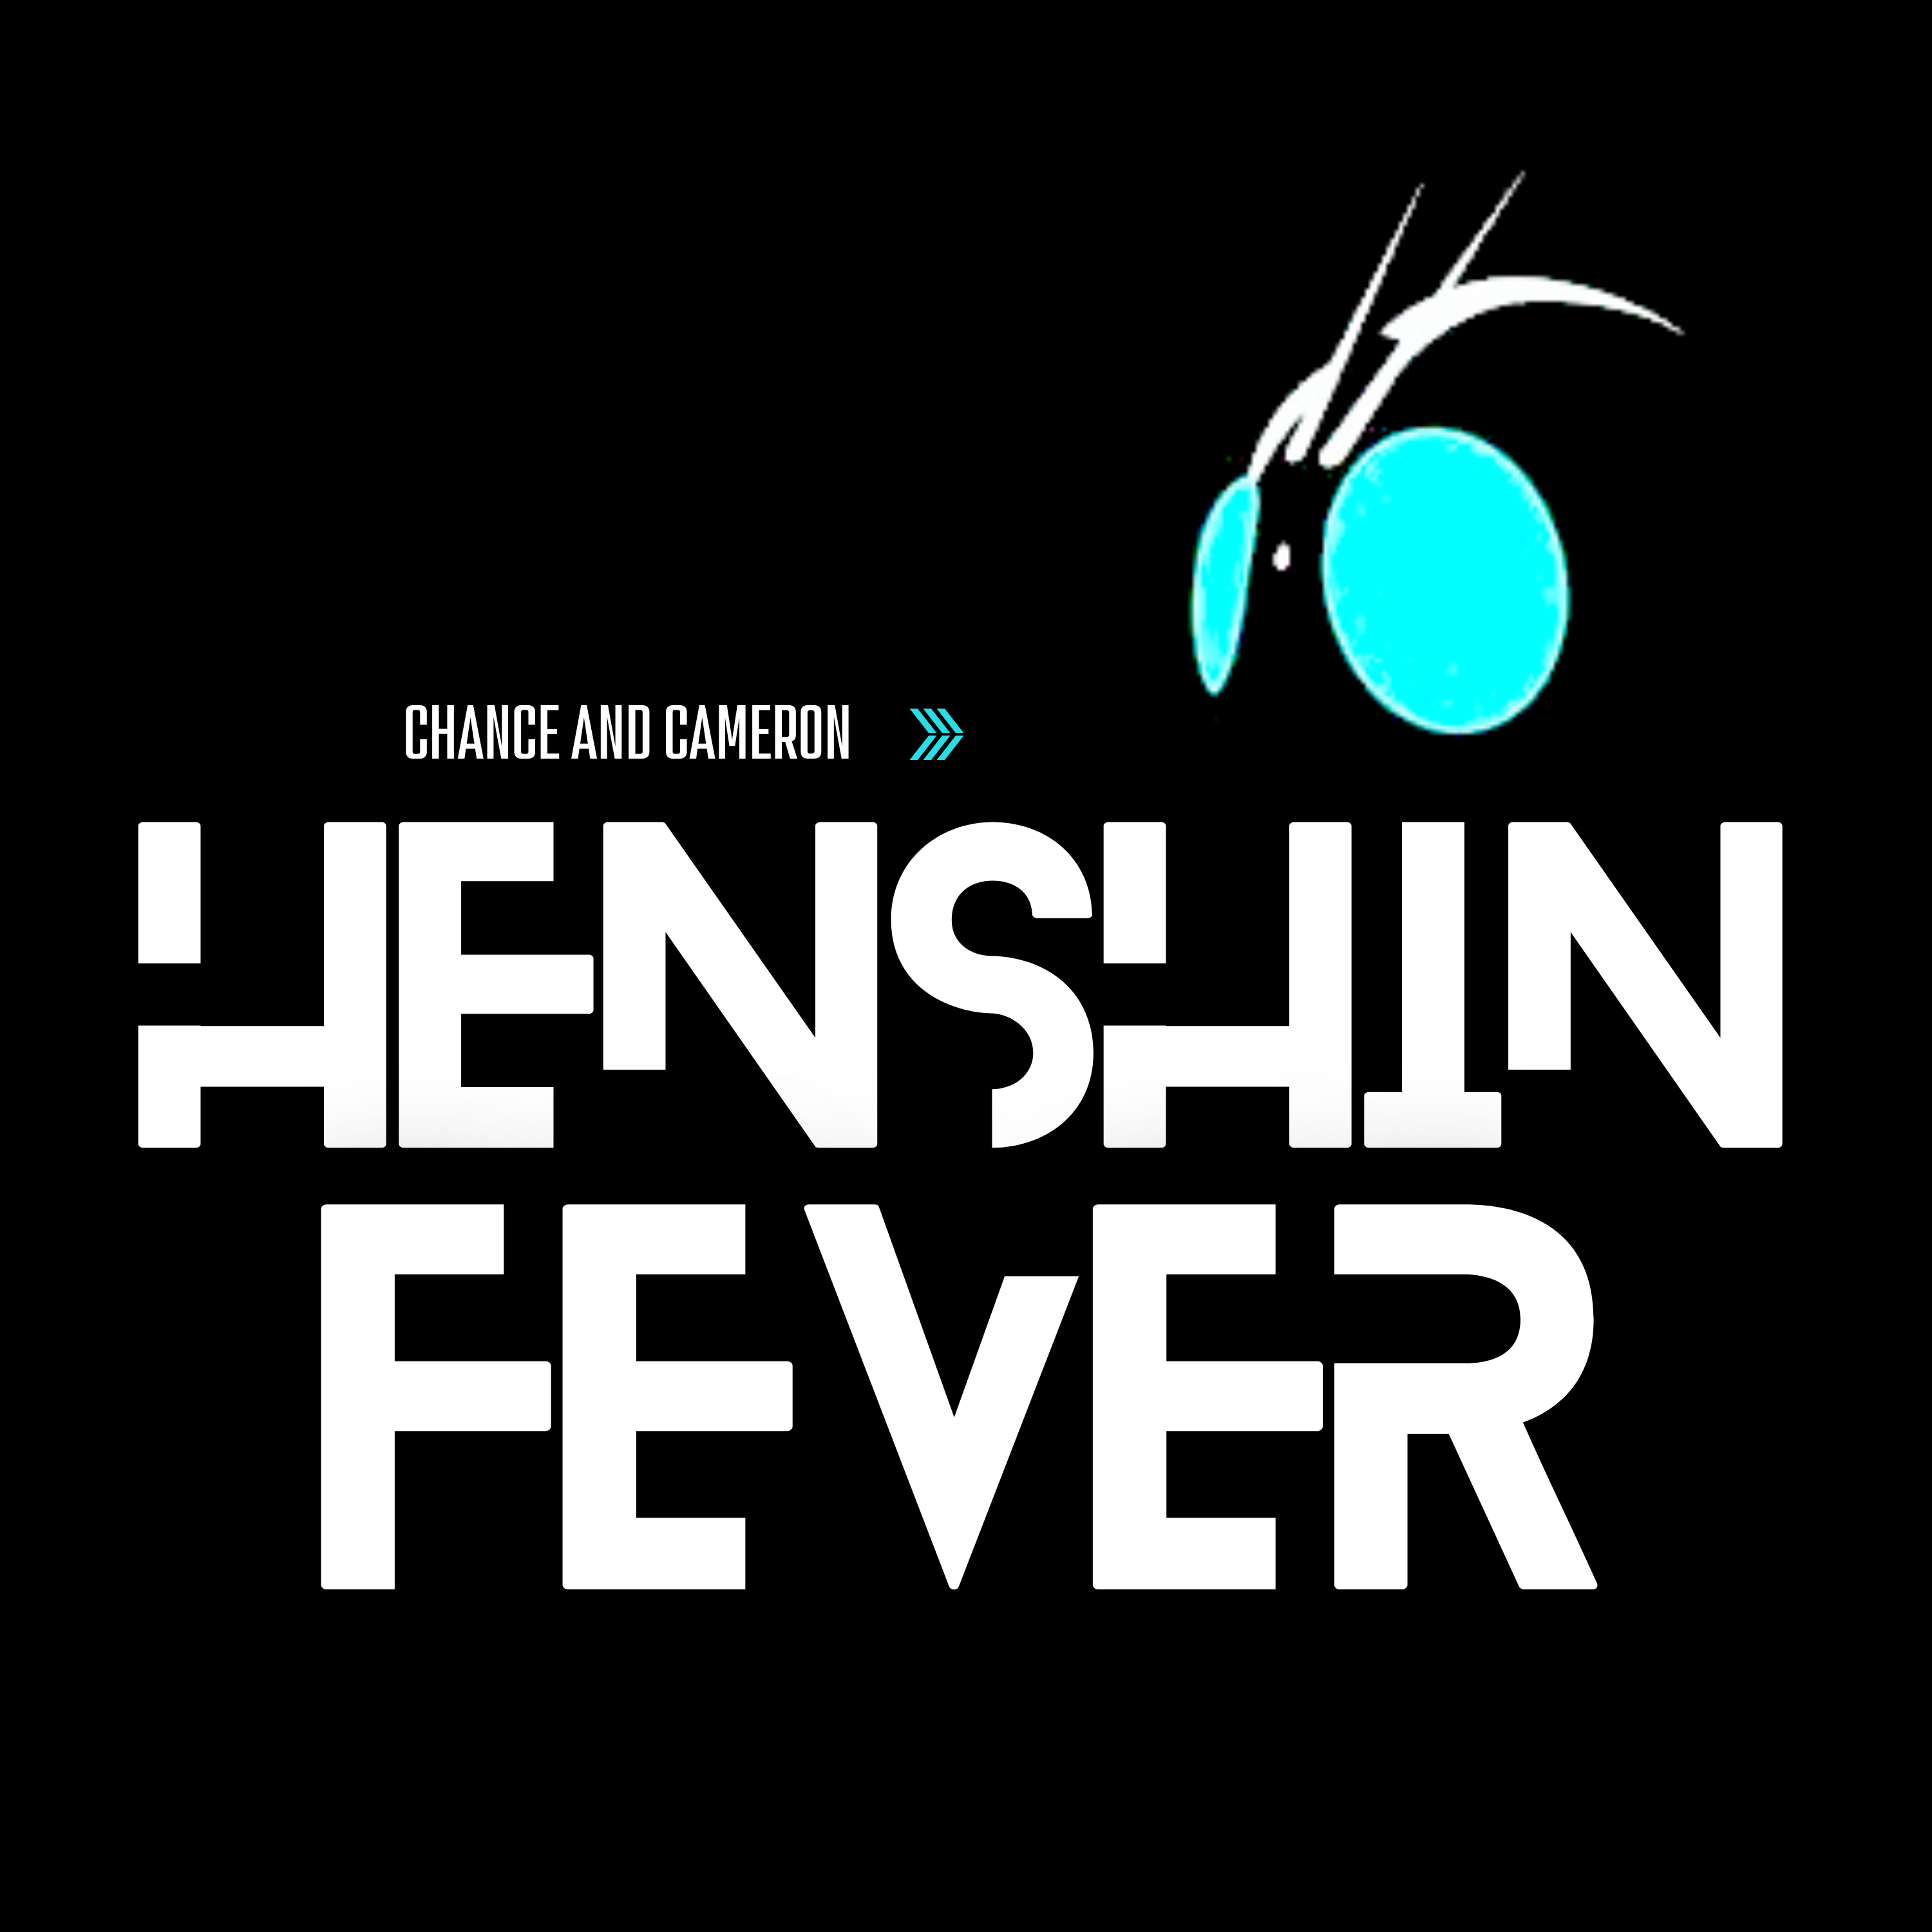 Artwork for Henshin Fever